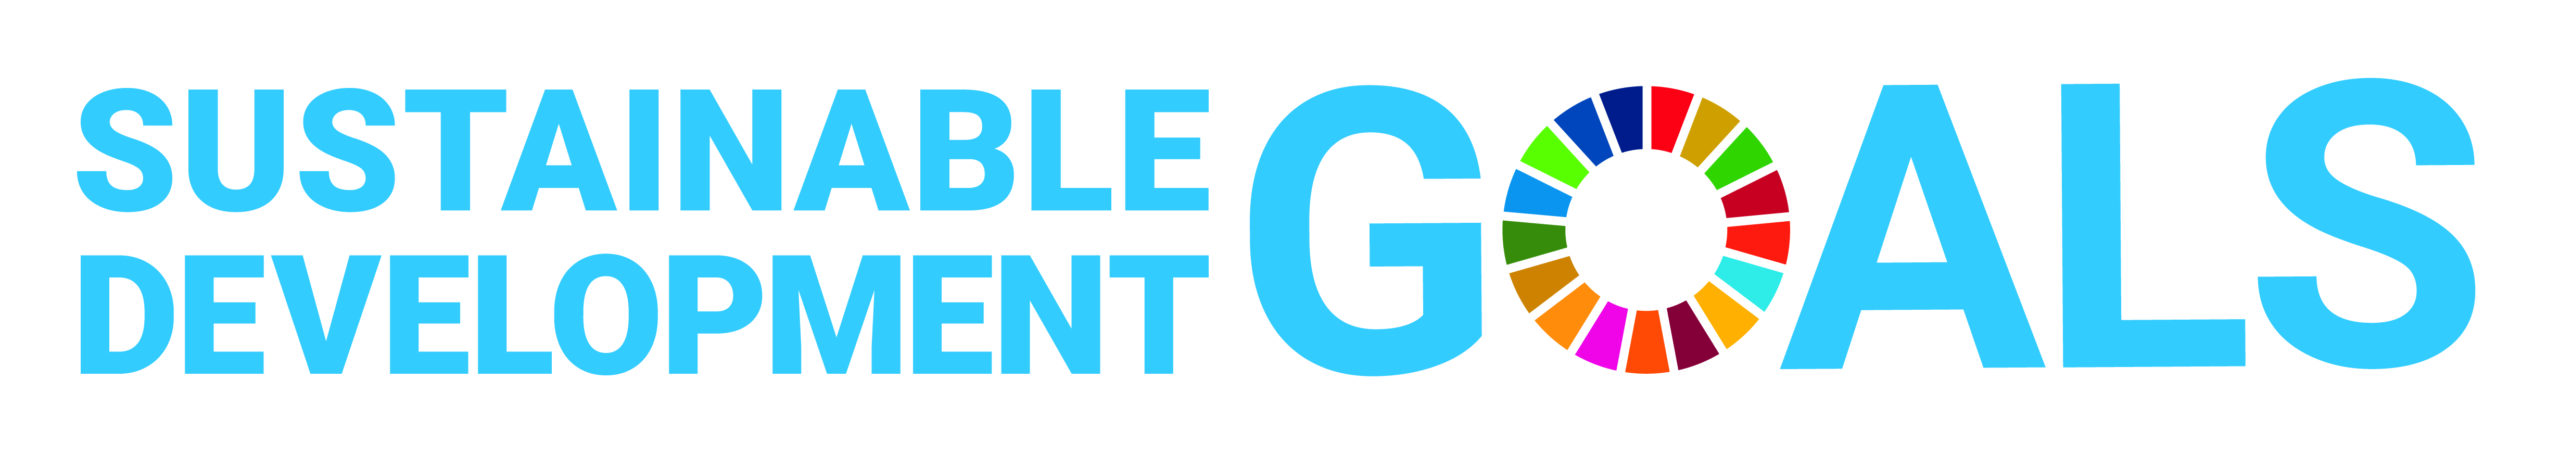 Logo Sustainable Development Goals van de VN